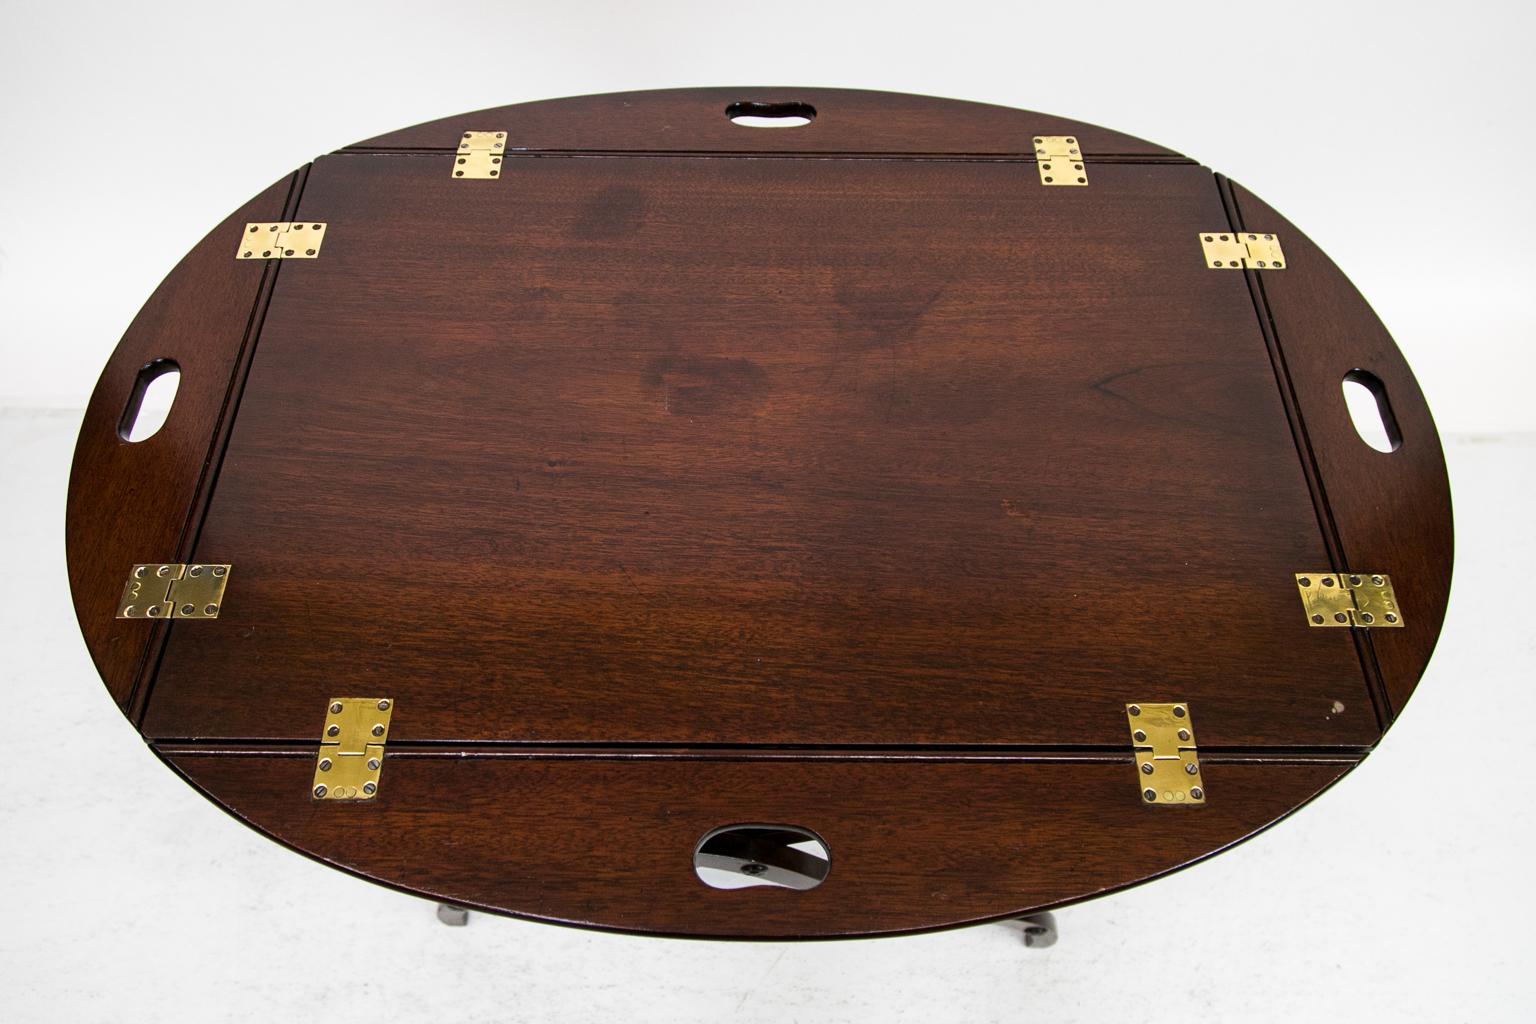 Dieser Butler-Tisch hat die originalen Messingscharniere, die für eine einfache Wartung poliert und lackiert wurden. Auf einer Seite der Platte befindet sich eine zehn Zentimeter lange Einkerbung, das Tablett ist an den Beinen befestigt.
    